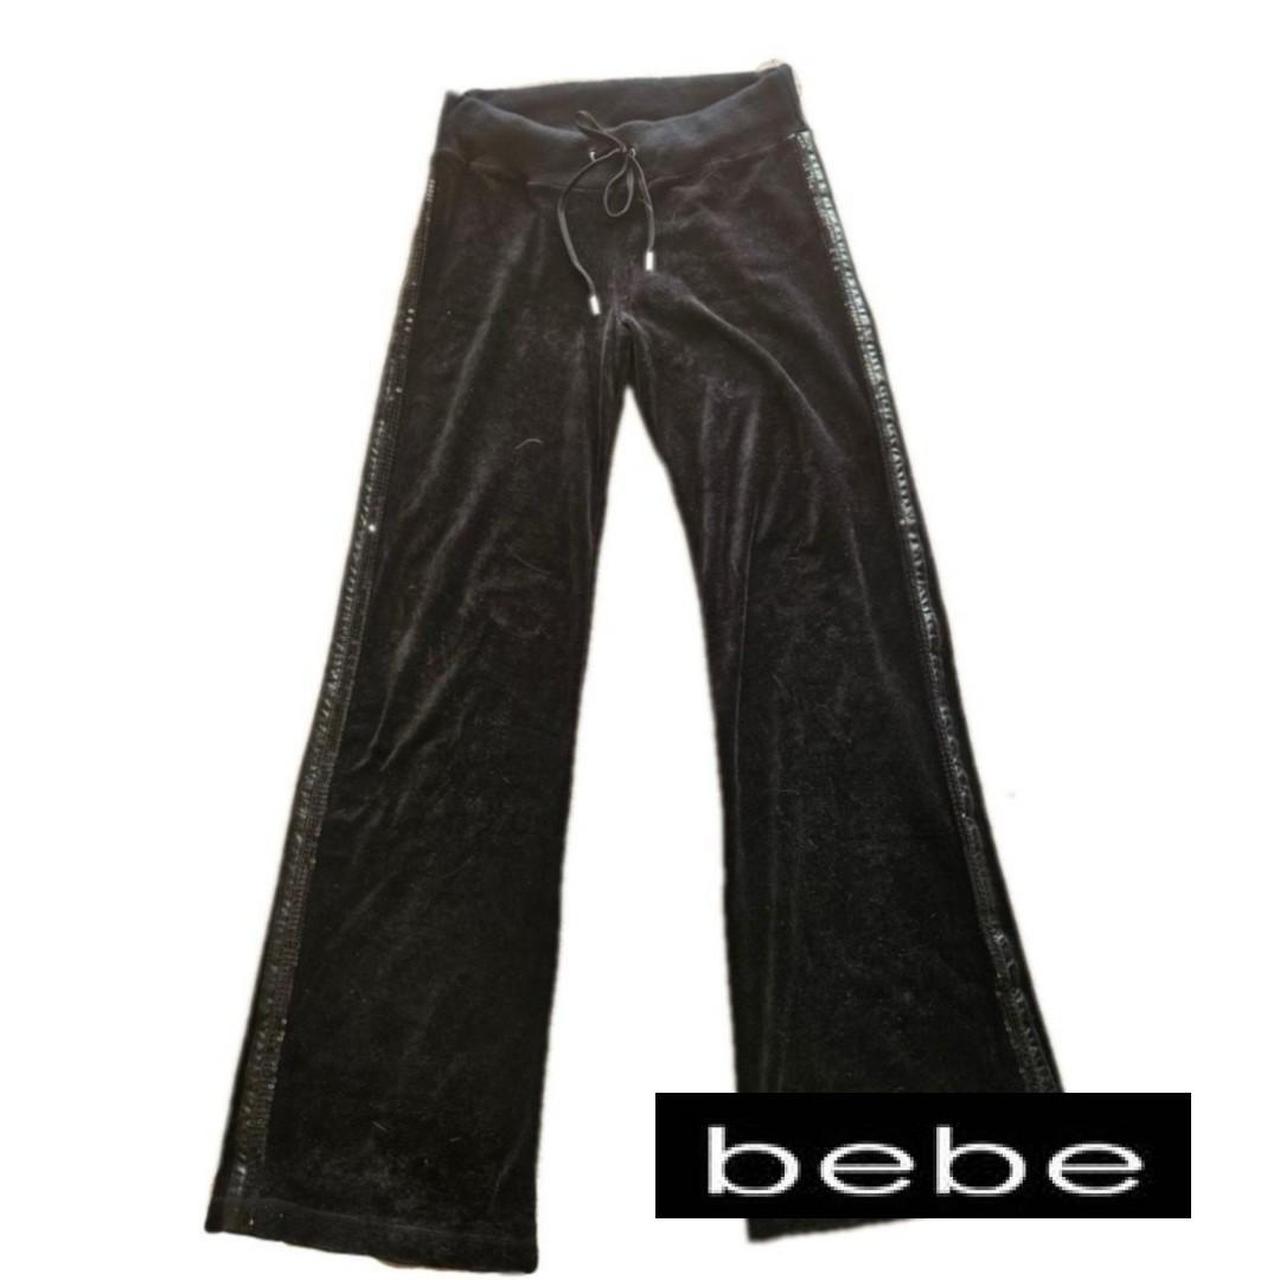 Bebe tracksuit style pants Flares Side... - Depop